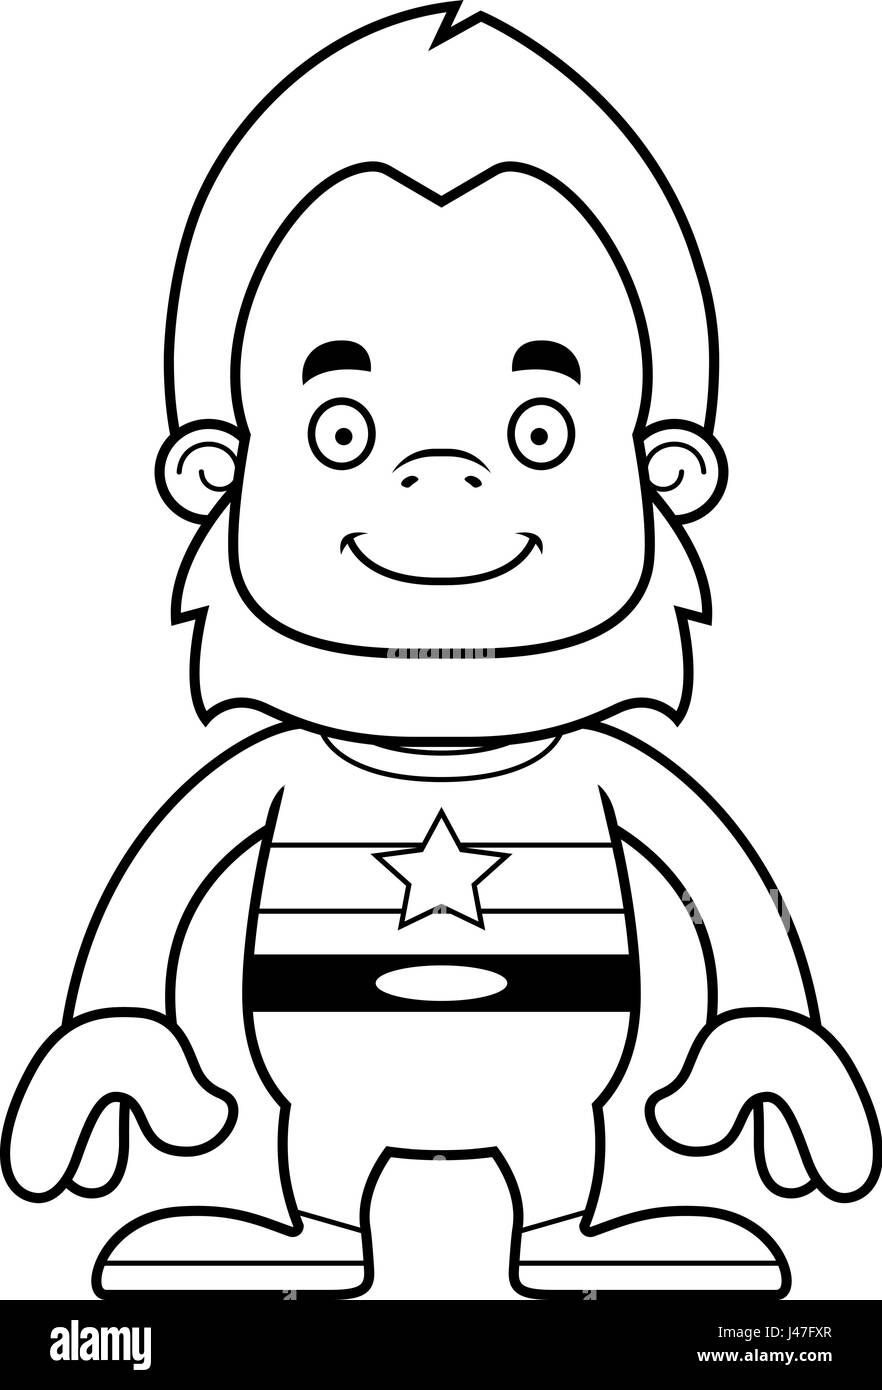 Un cartoon superhero sasquatch sorridente. Illustrazione Vettoriale